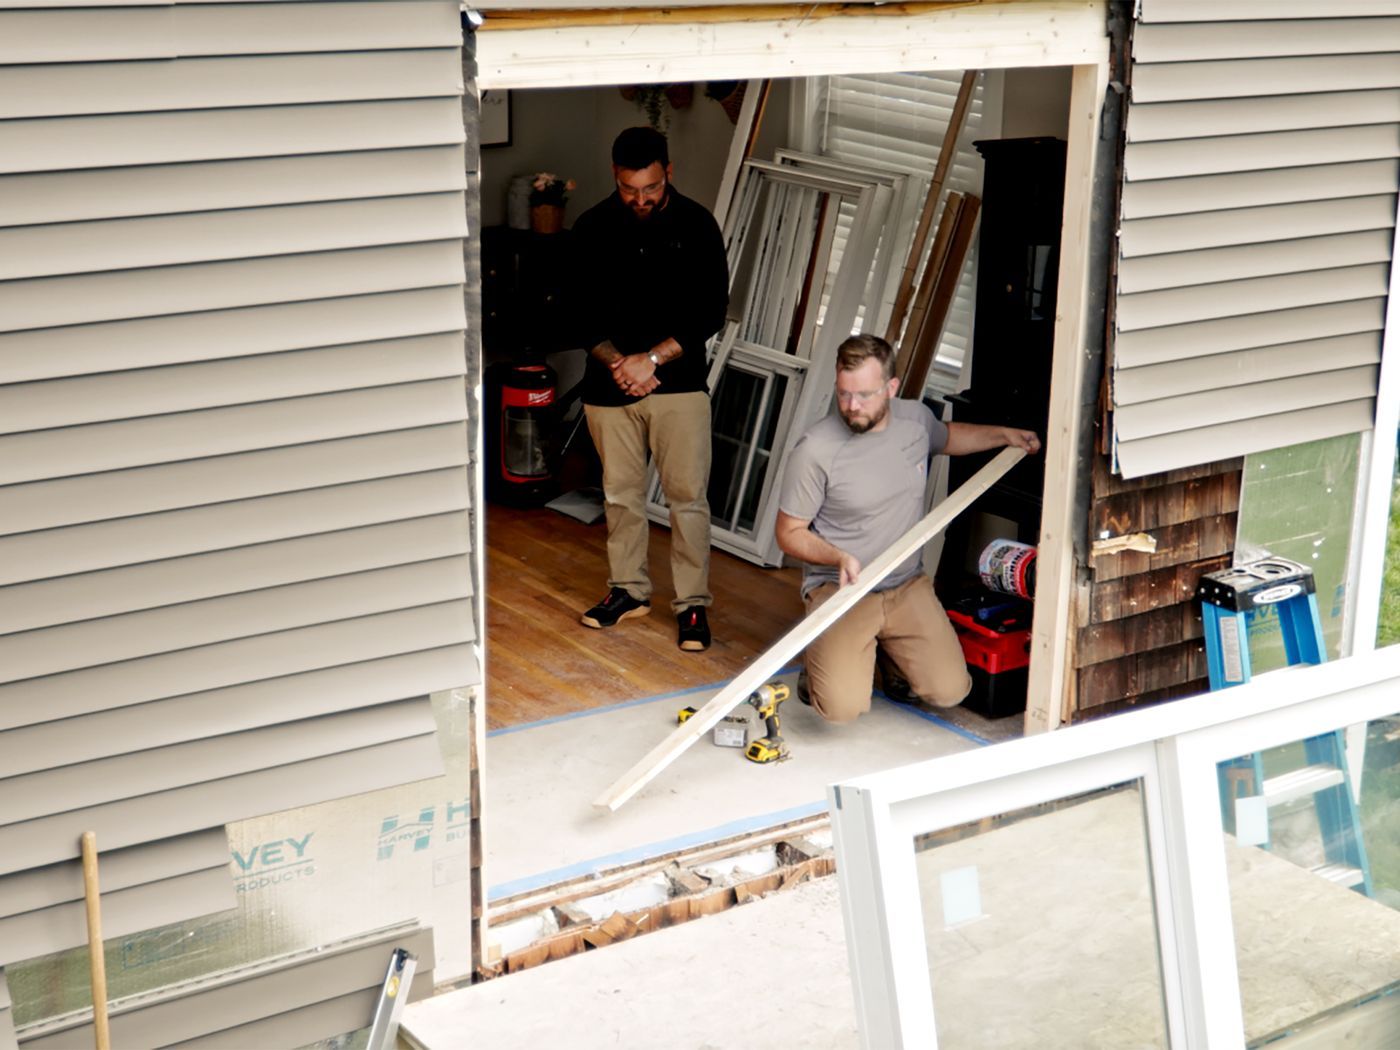 S22 E10: Nathan Gilbert converts a window into a sliding patio door